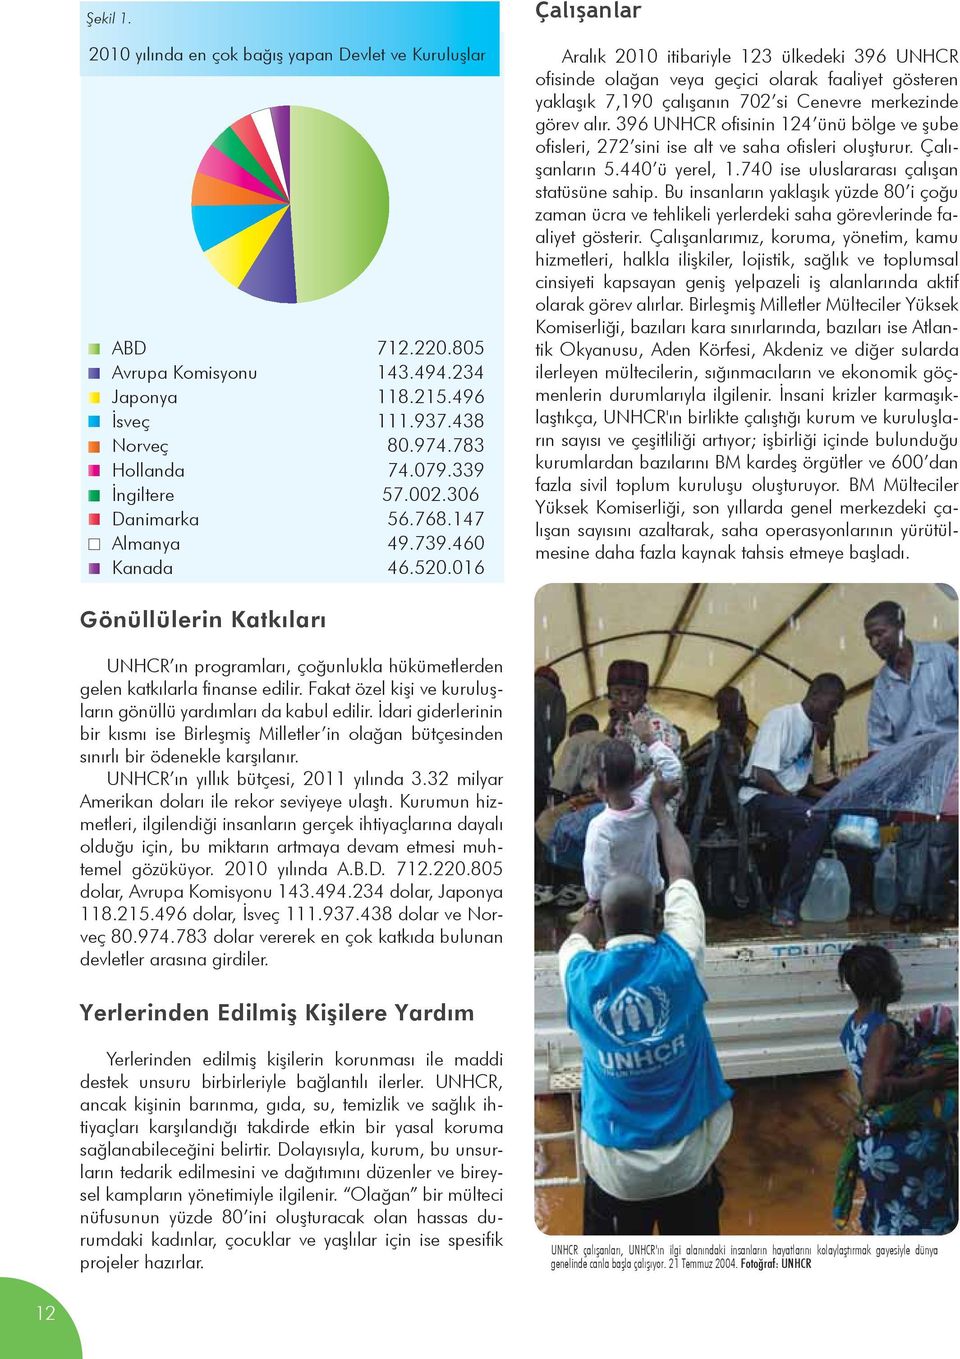 016 Çalışanlar Aralık 2010 itibariyle 123 ülkedeki 396 UNHCR ofisinde olağan veya geçici olarak faaliyet gösteren yaklaşık 7,190 çalışanın 702 si Cenevre merkezinde görev alır.